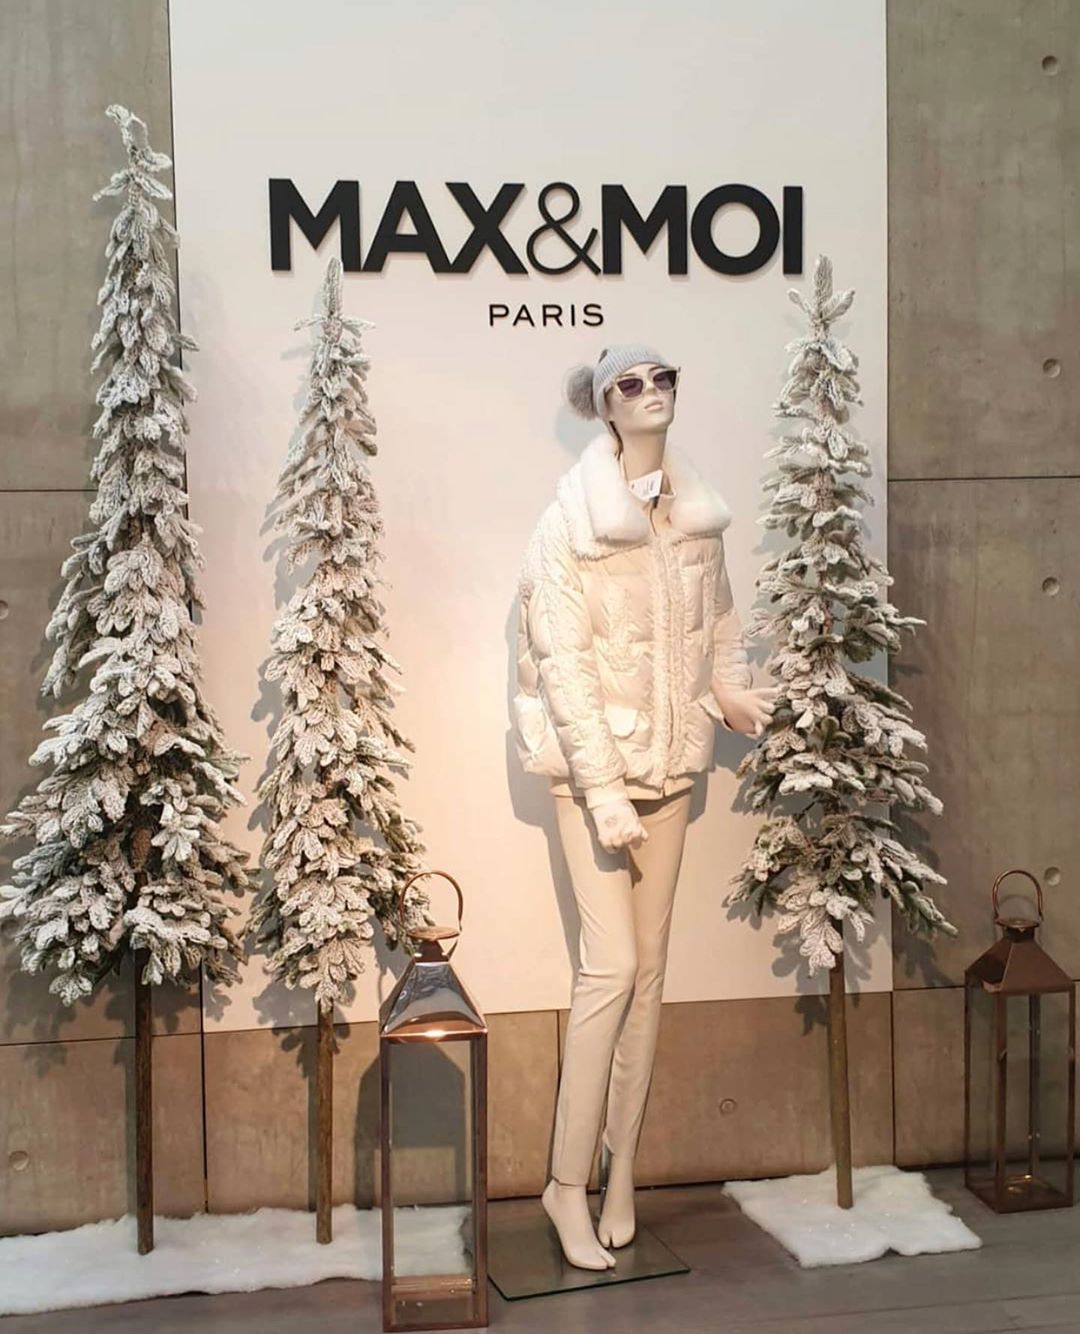 Online-бутик брендовой одежды - Сентябрь - самое время готовиться вплотную к зиме❄️
Кремовые образы от французского бренда Max&Moi на нашем сайте!